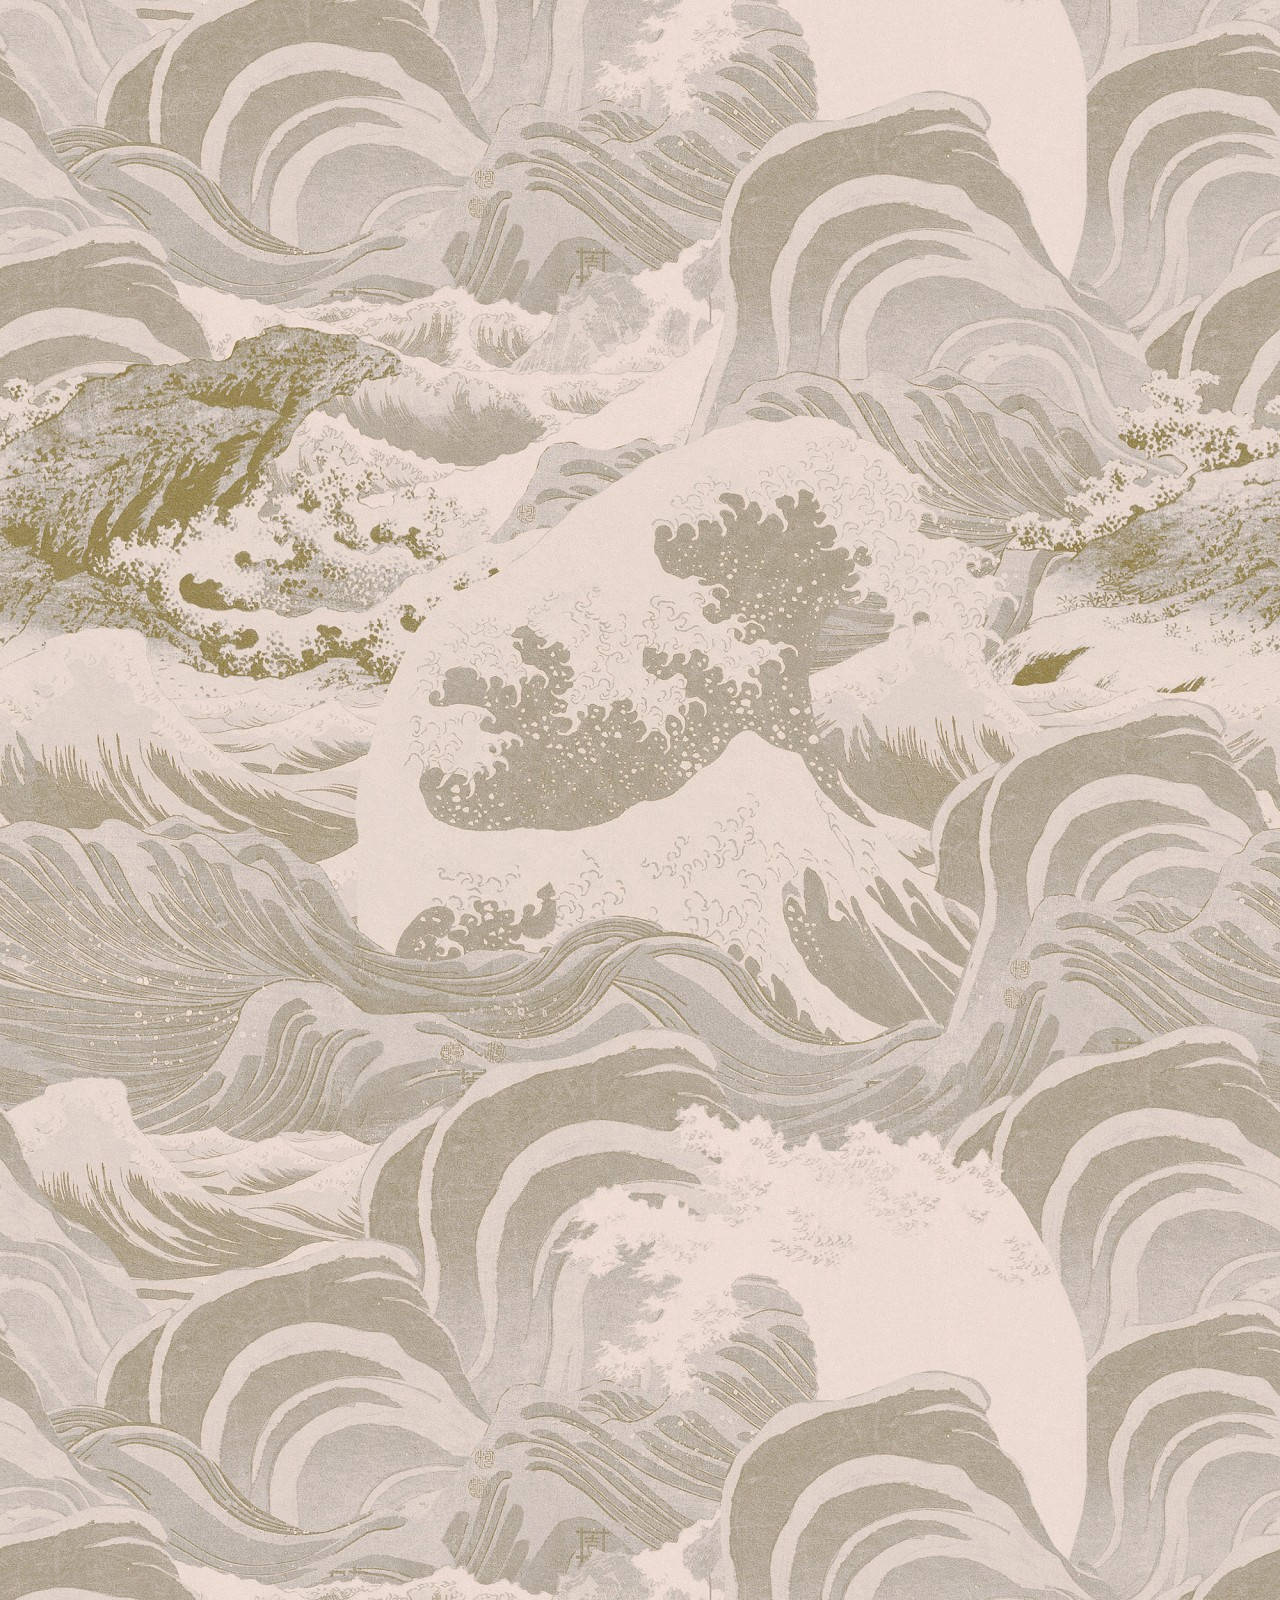 Neutral Iphone Ocean Wave Mountain Art Wallpaper